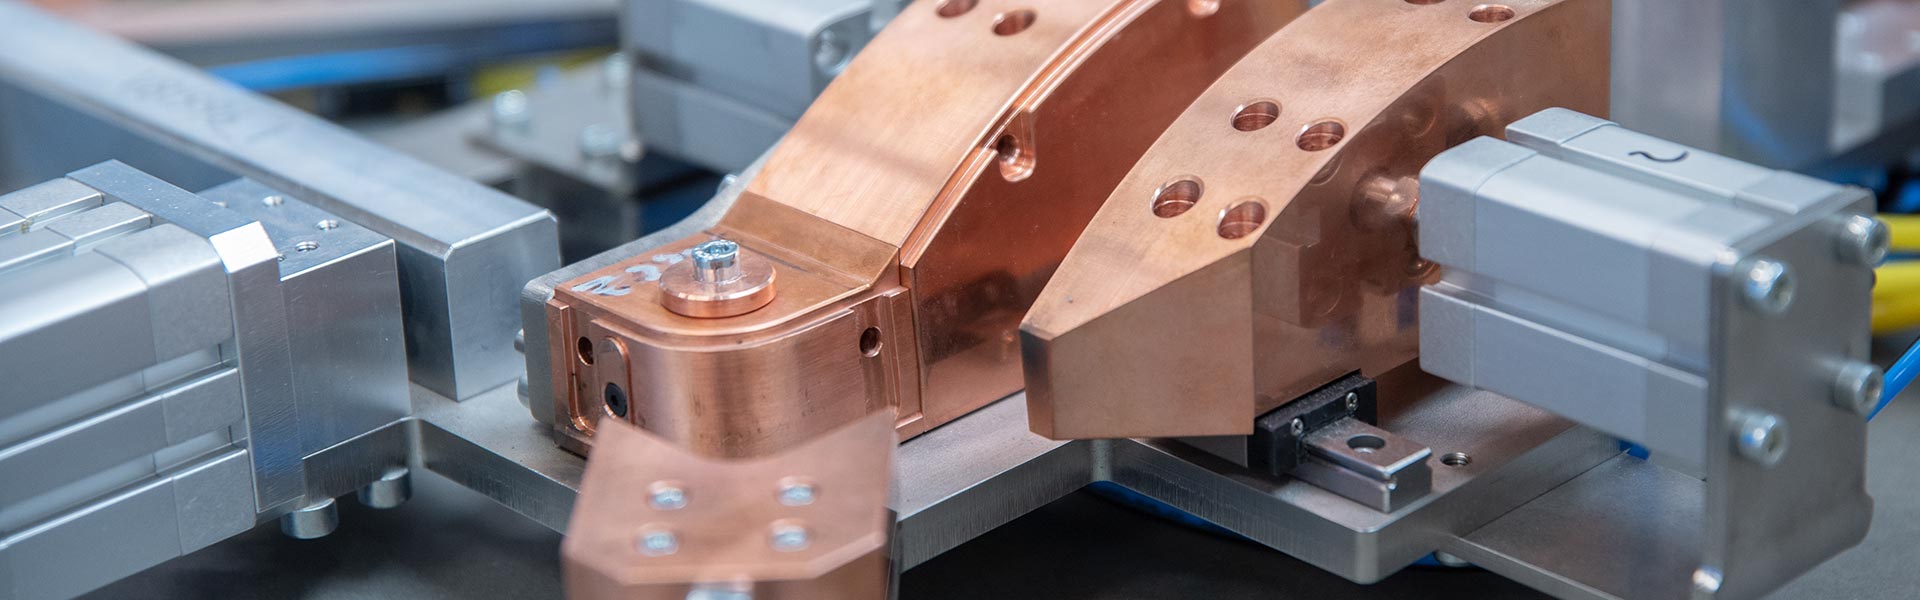 BBW Lasertechnik fertigt Vorrichtungen für die Lasermaterialbearbeitung